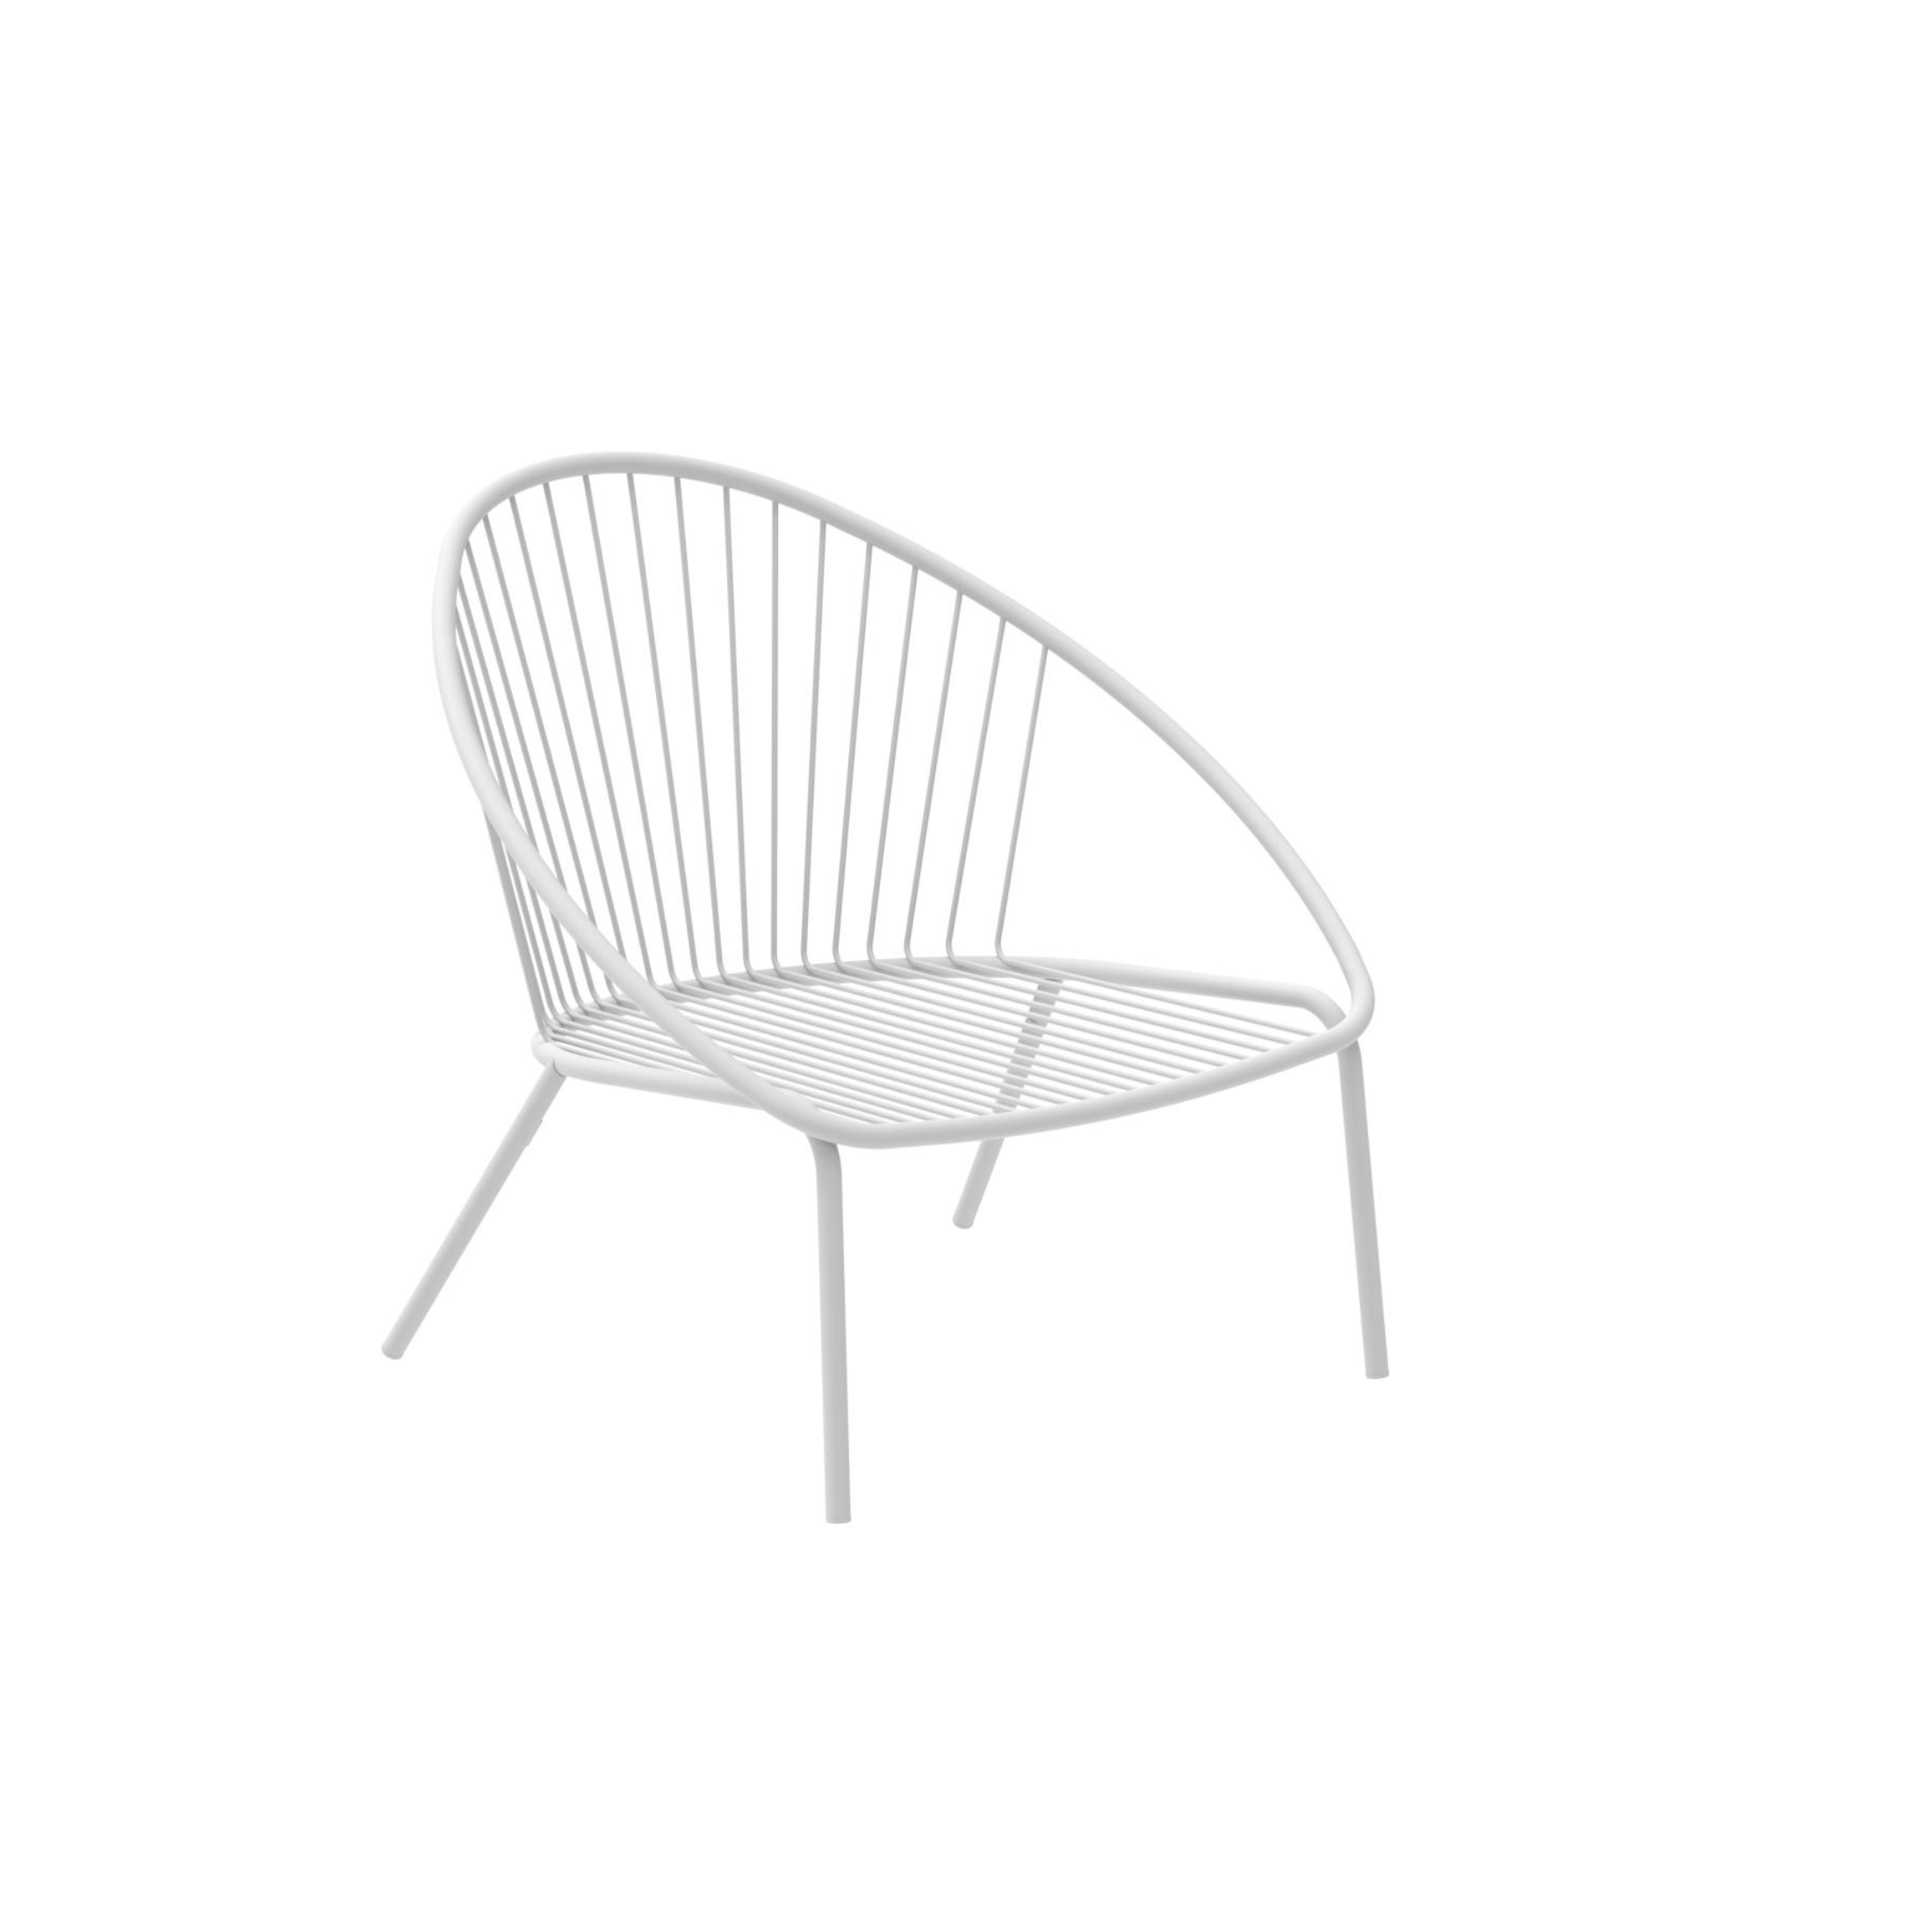 Poltrona bassa da giardino in metallo "Aria" sedia lounge impilabile cm 82x86 87h